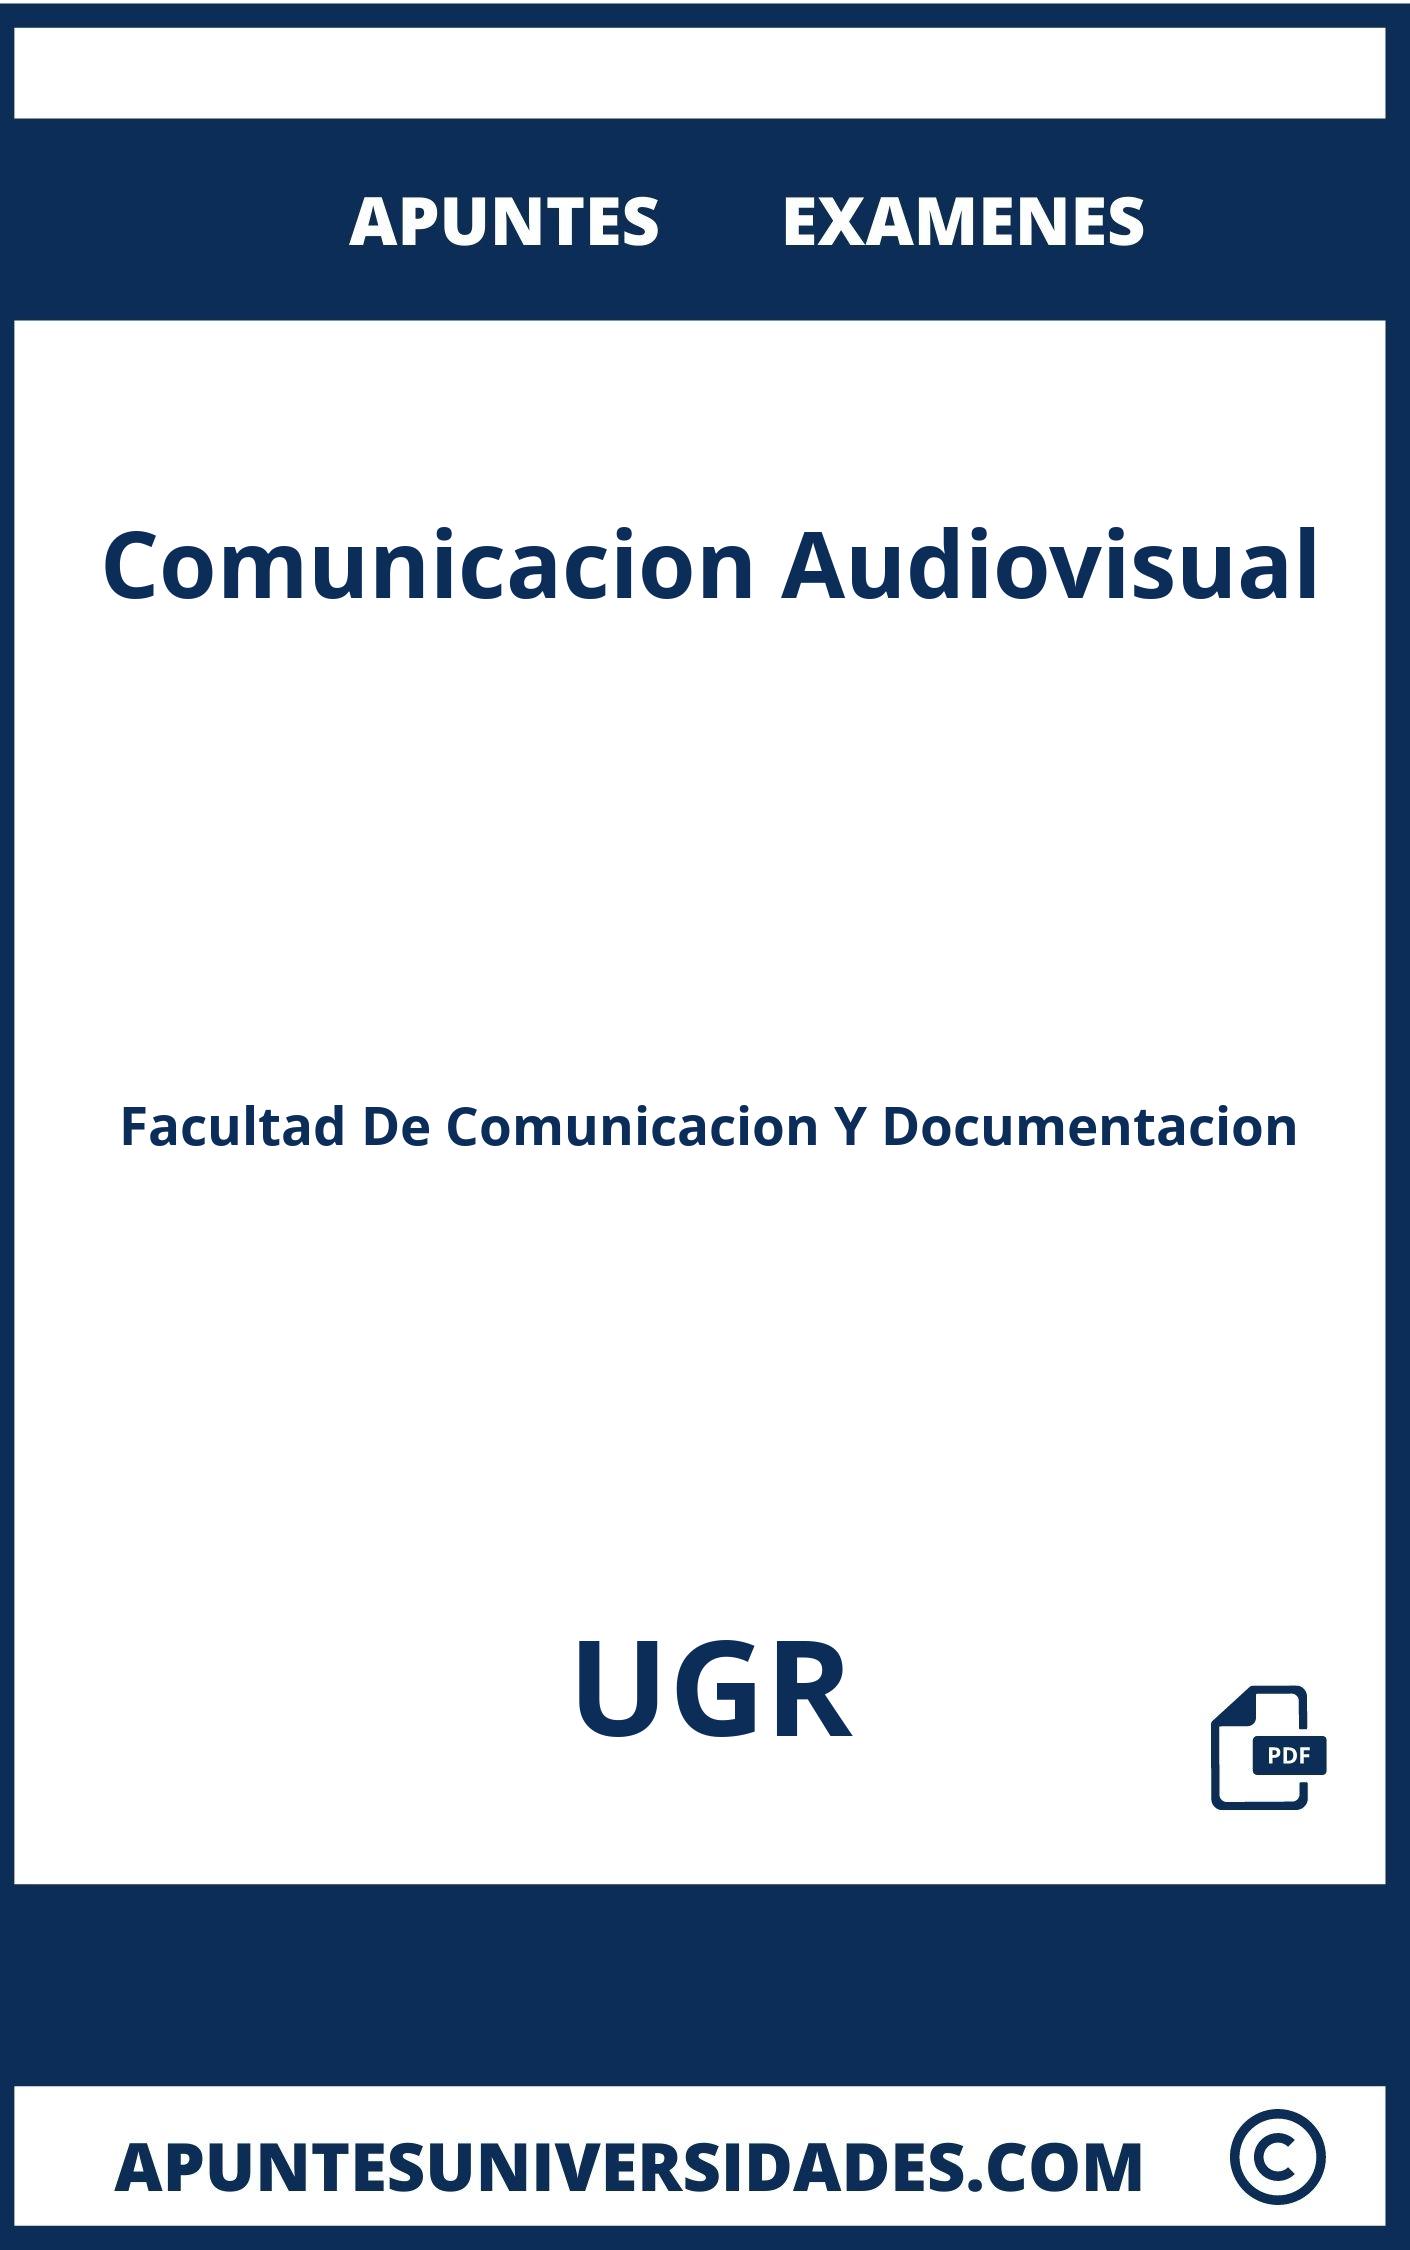 Apuntes y Examenes Comunicacion Audiovisual UGR